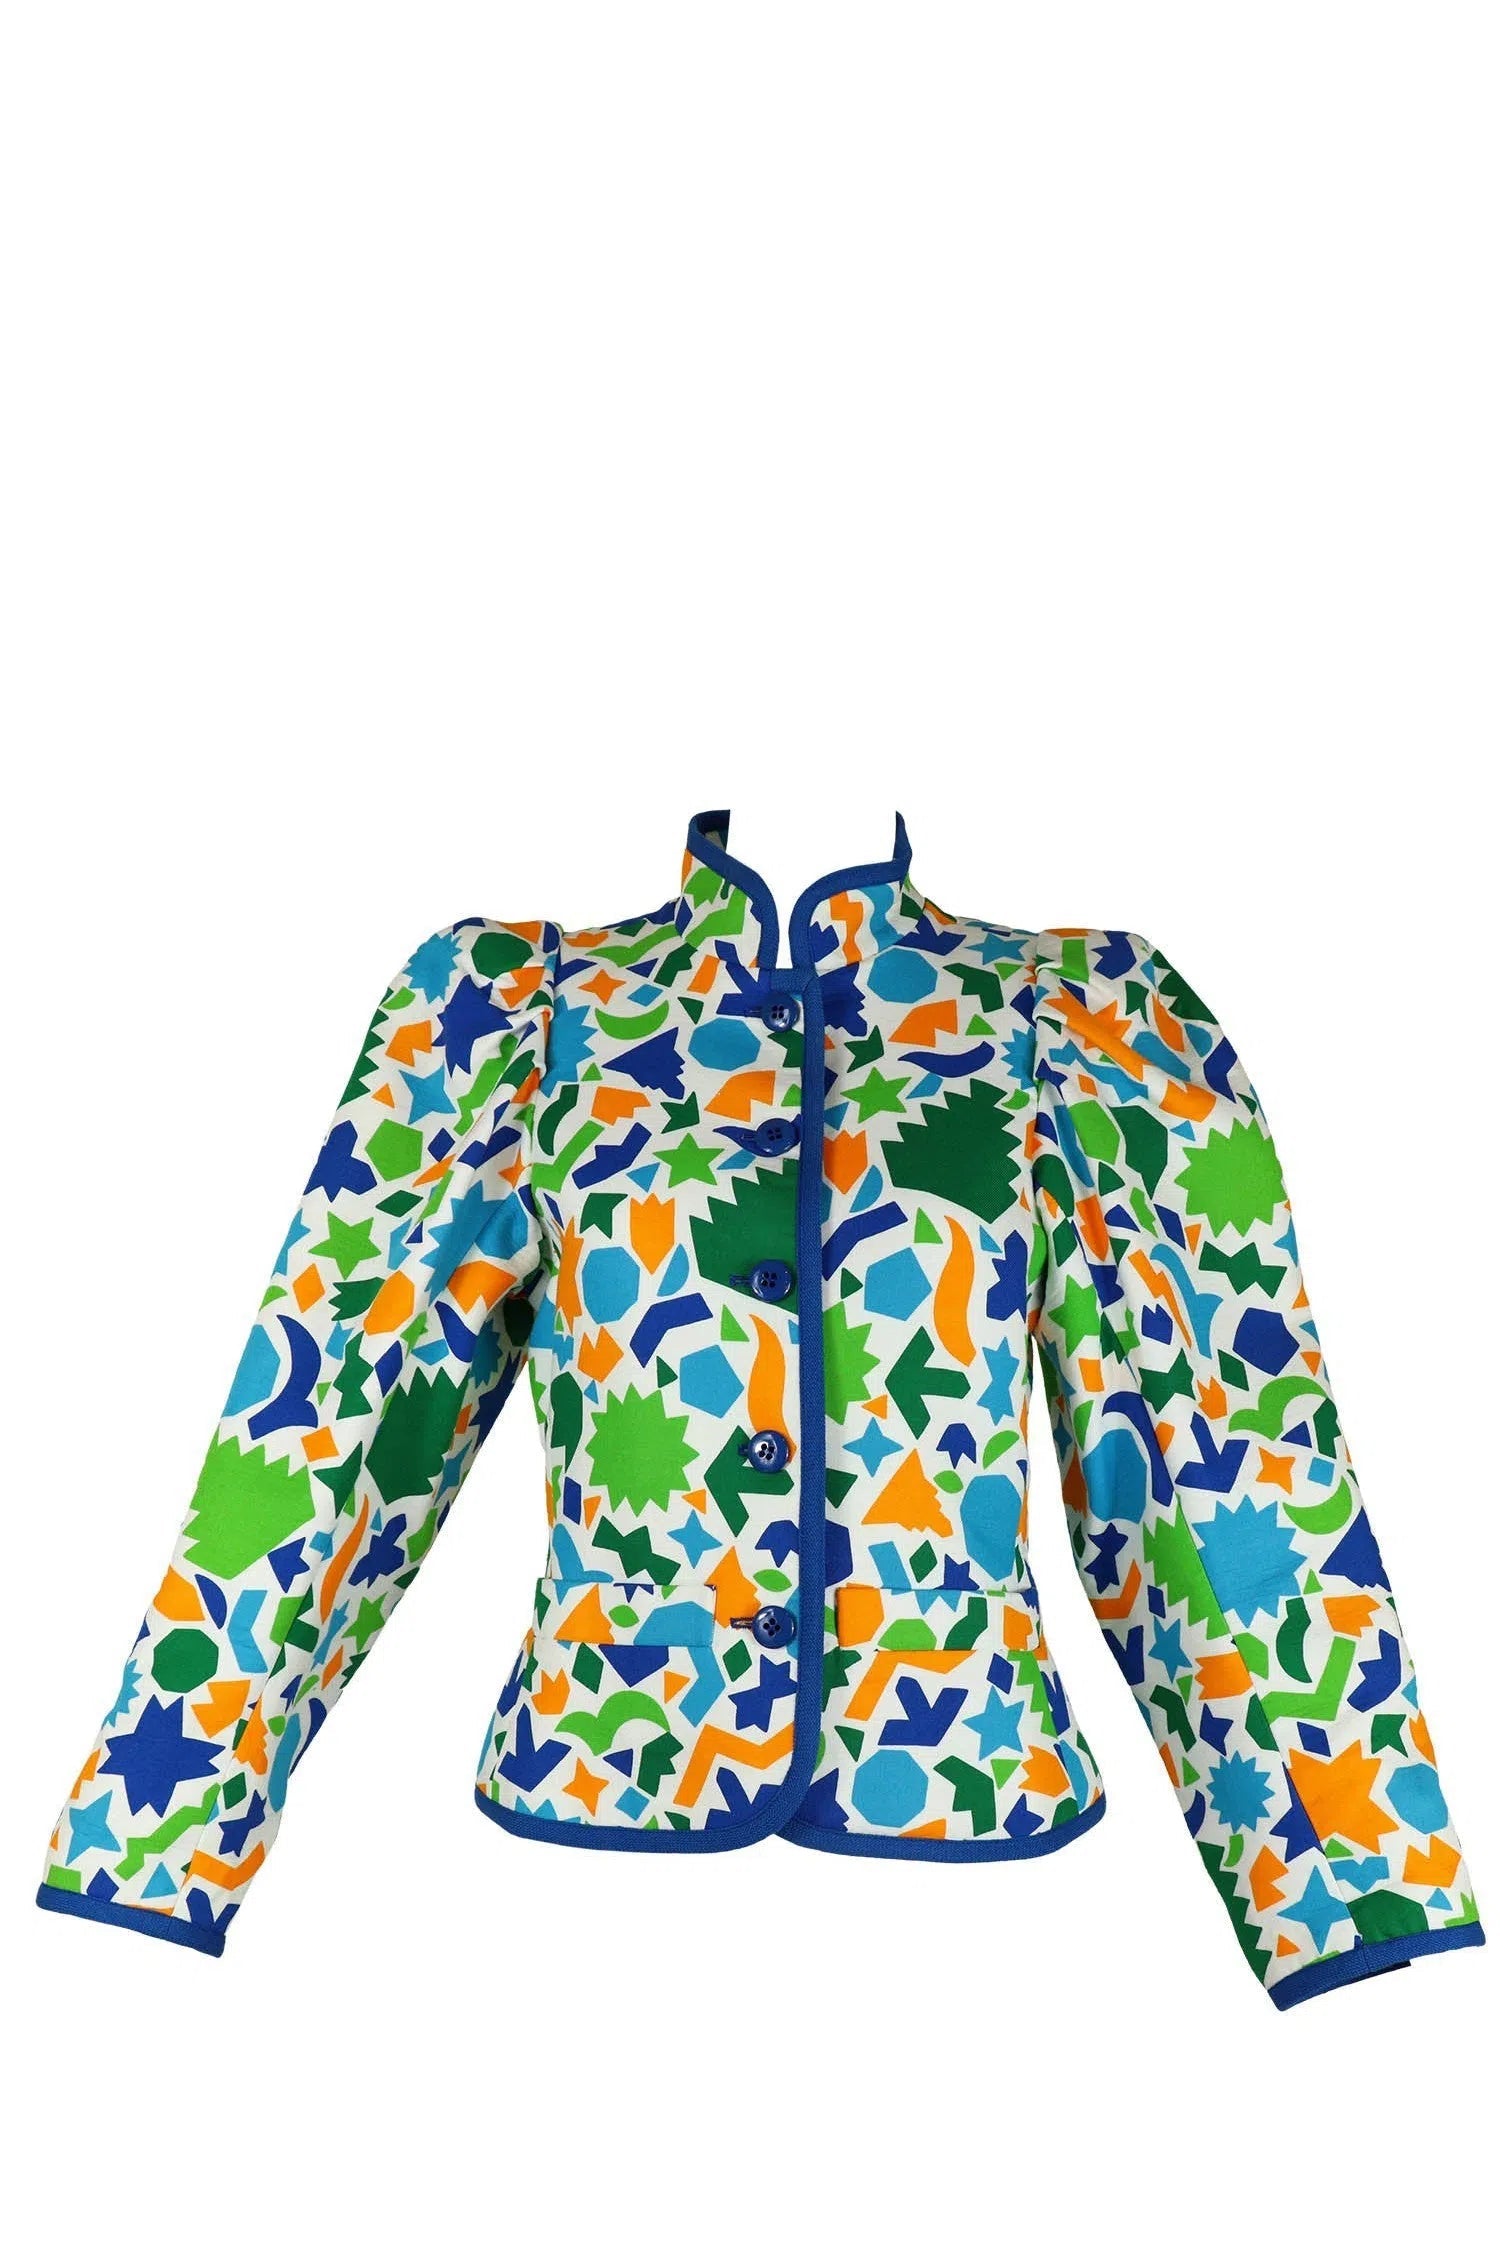 Yves Saint Laurent Rive Gauche Vintage Geometric Jacket - Foxy Couture Carmel